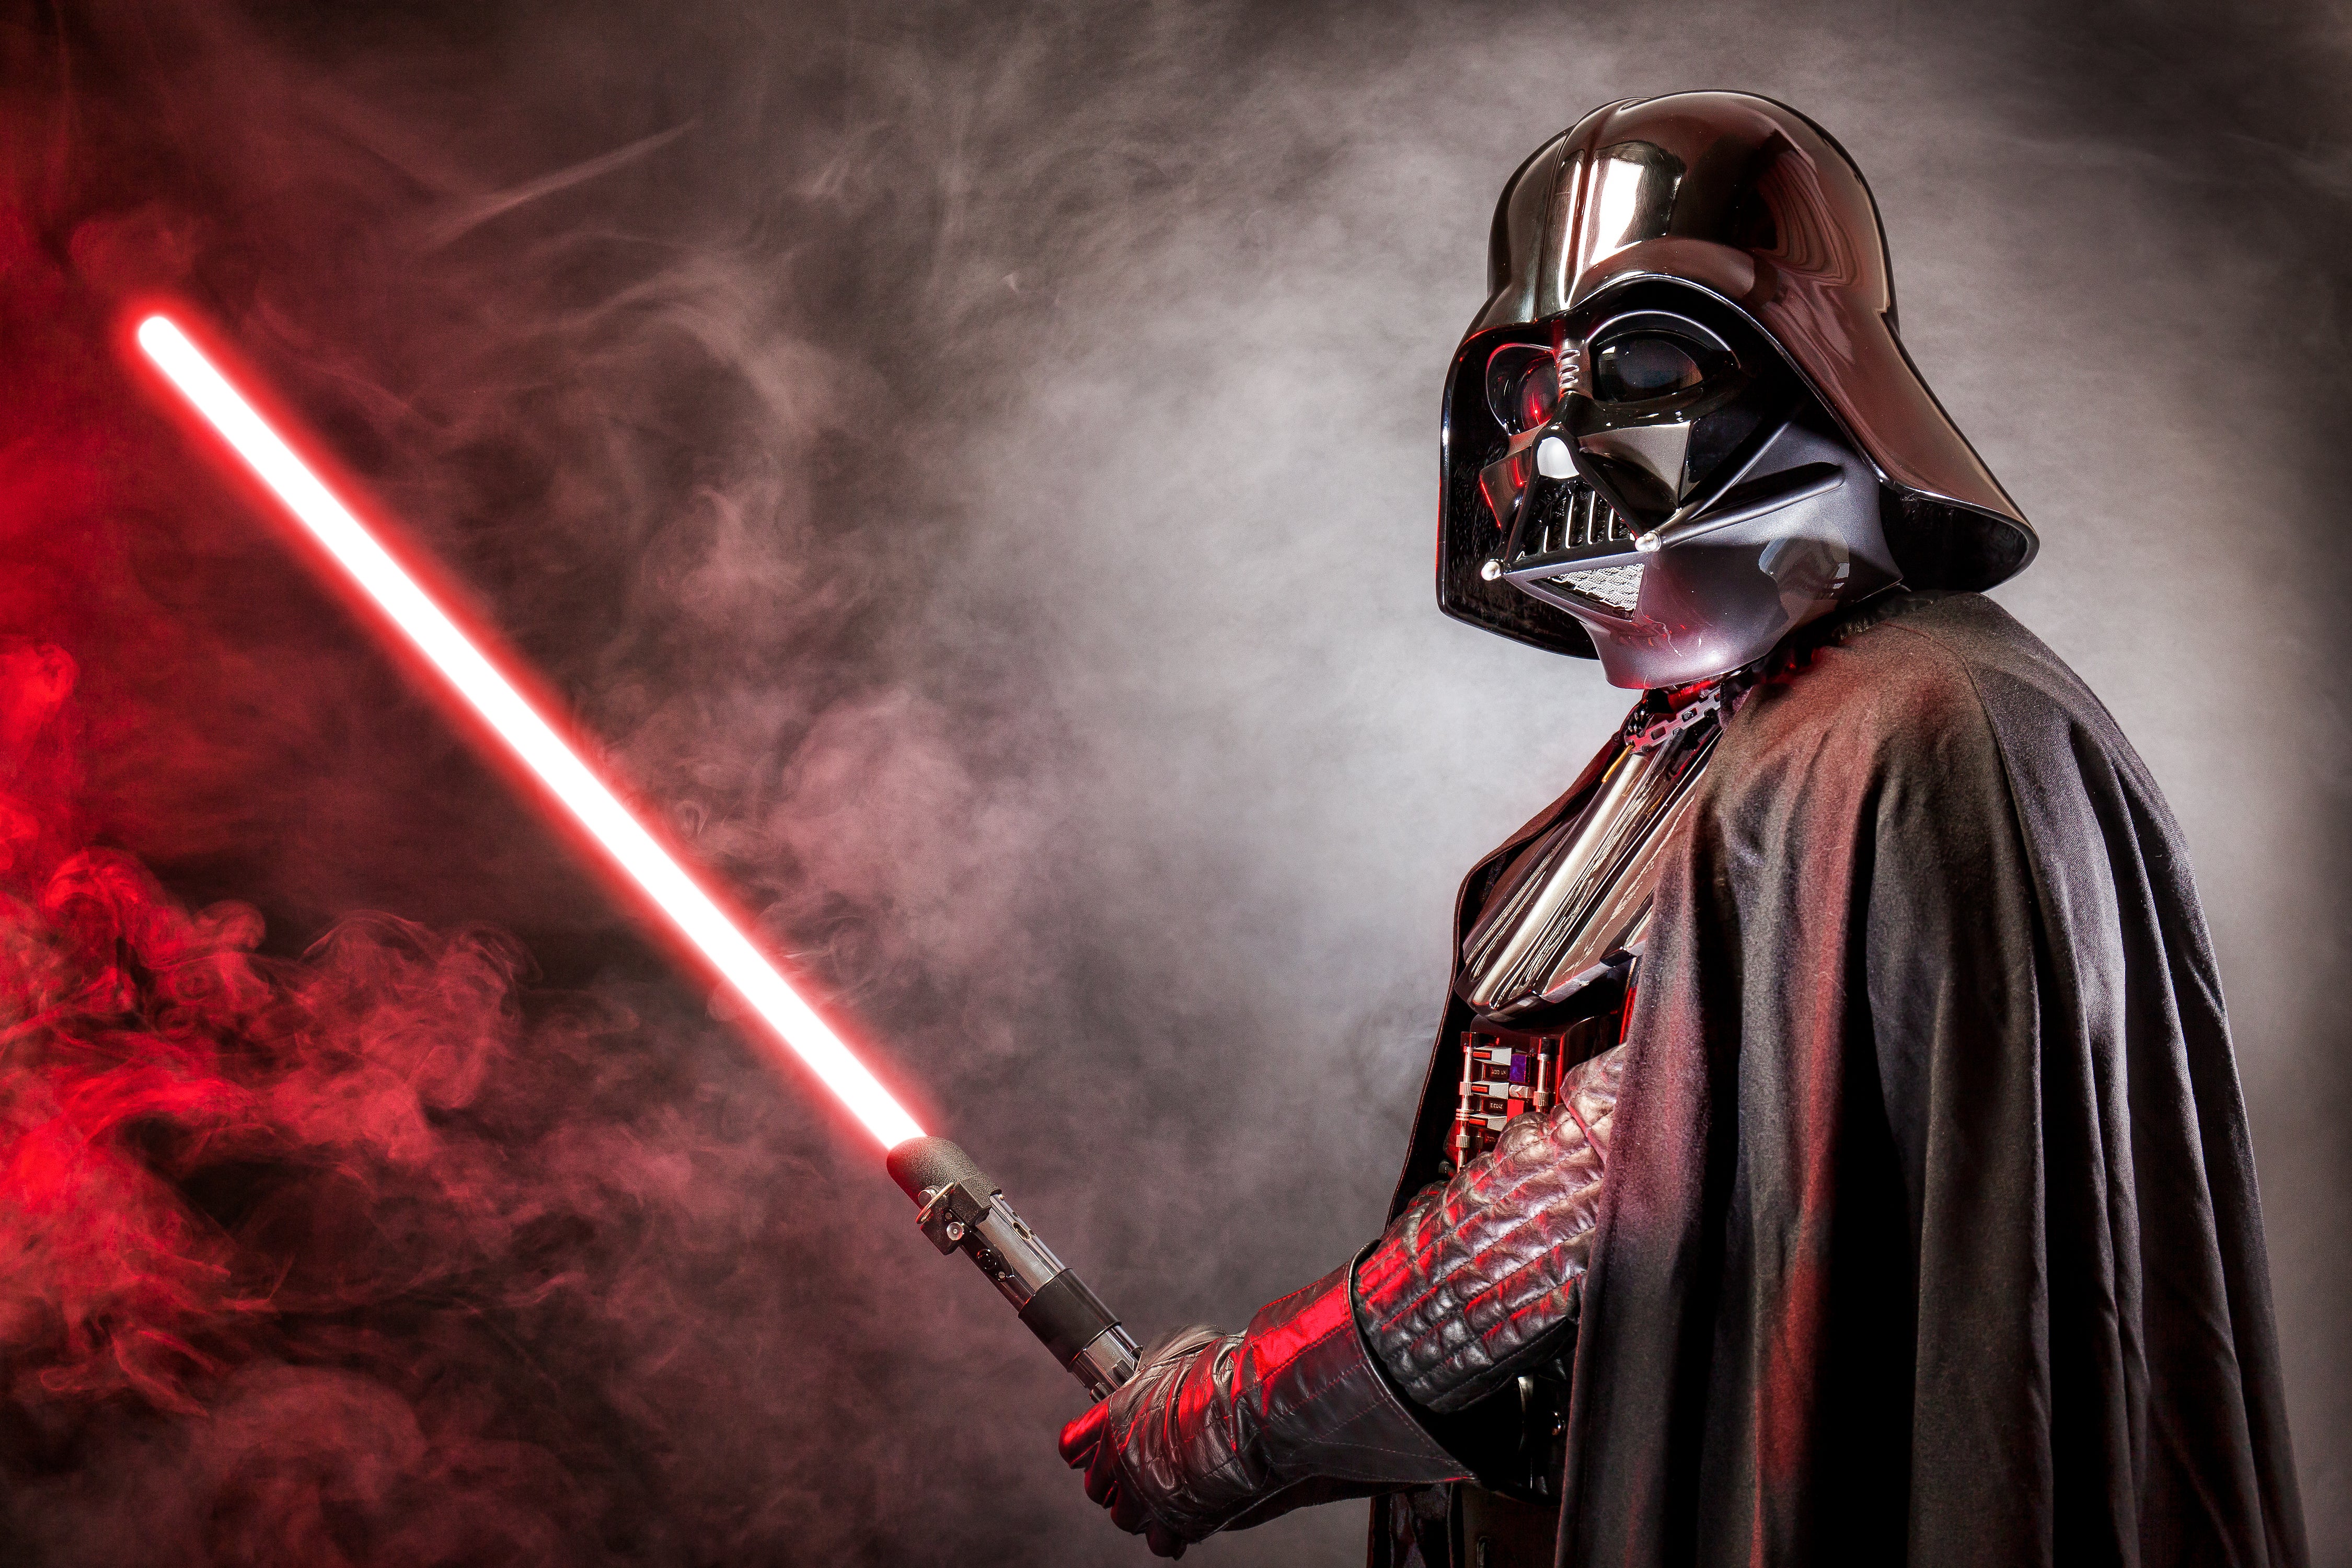 Darth Vader with lightsabre